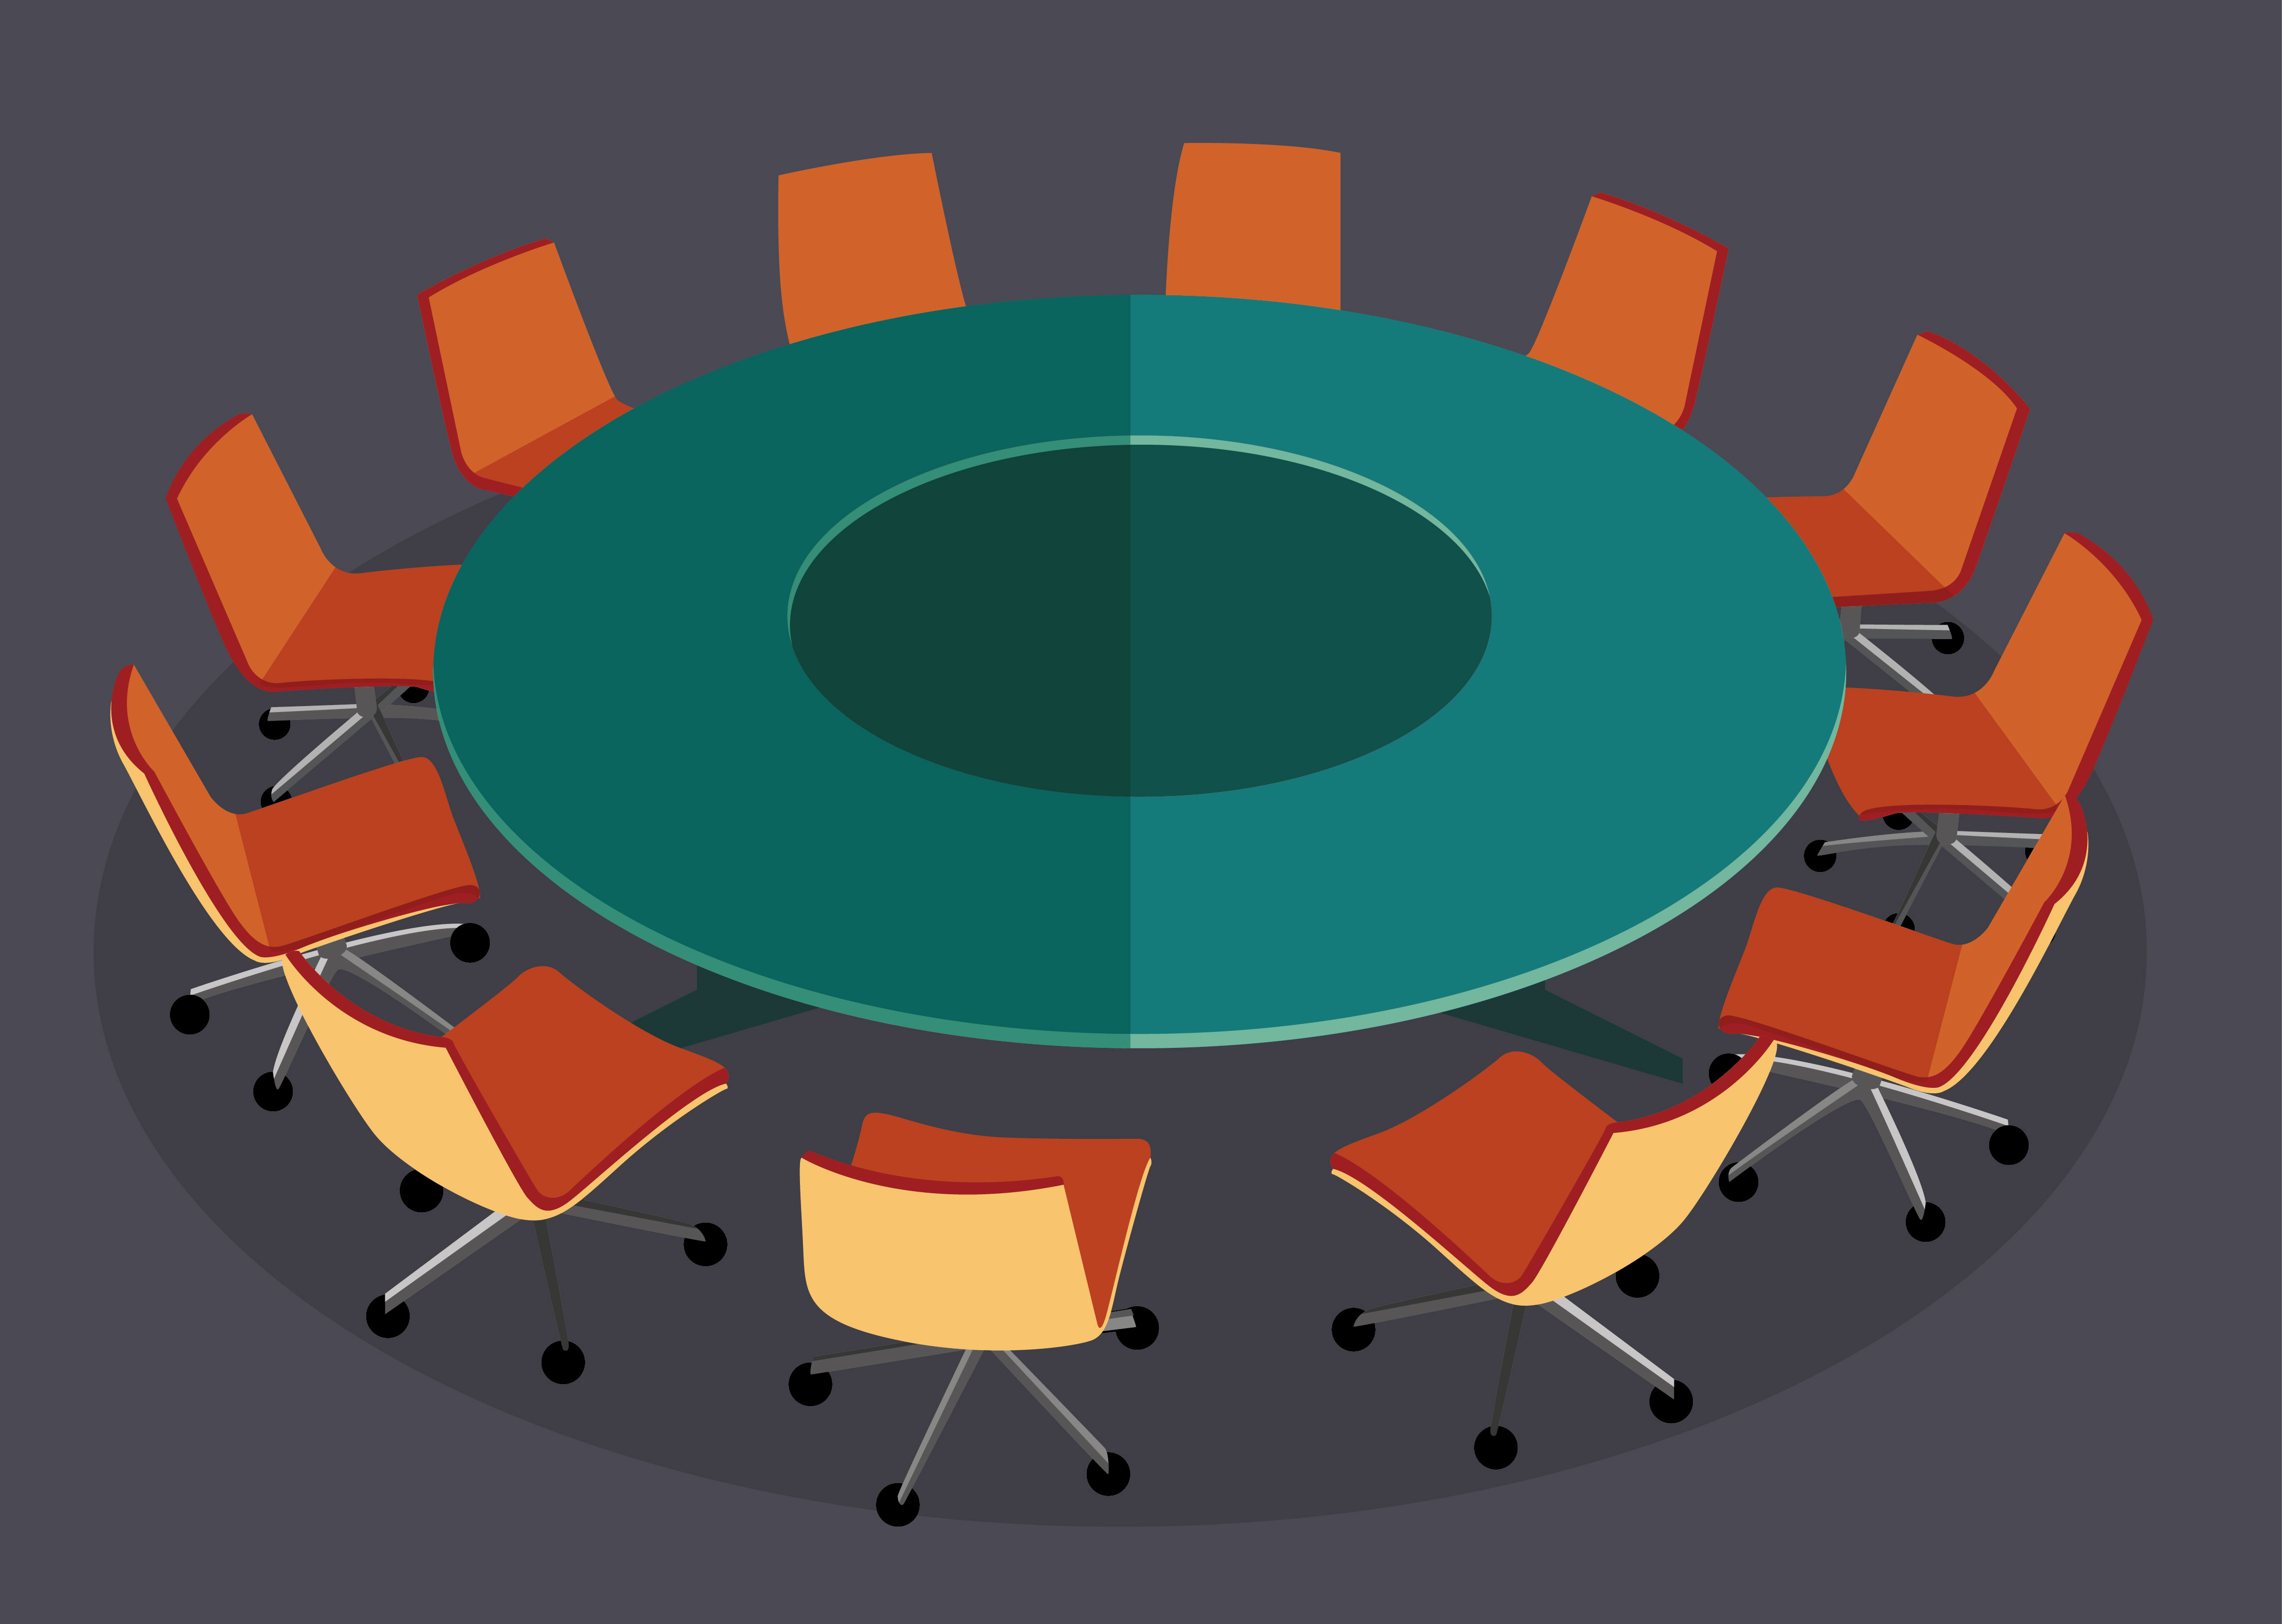 Описание круглого стола. Круглый стол. Тематический круглый стол. Векторный круглый стол. Круглый стол заседание.